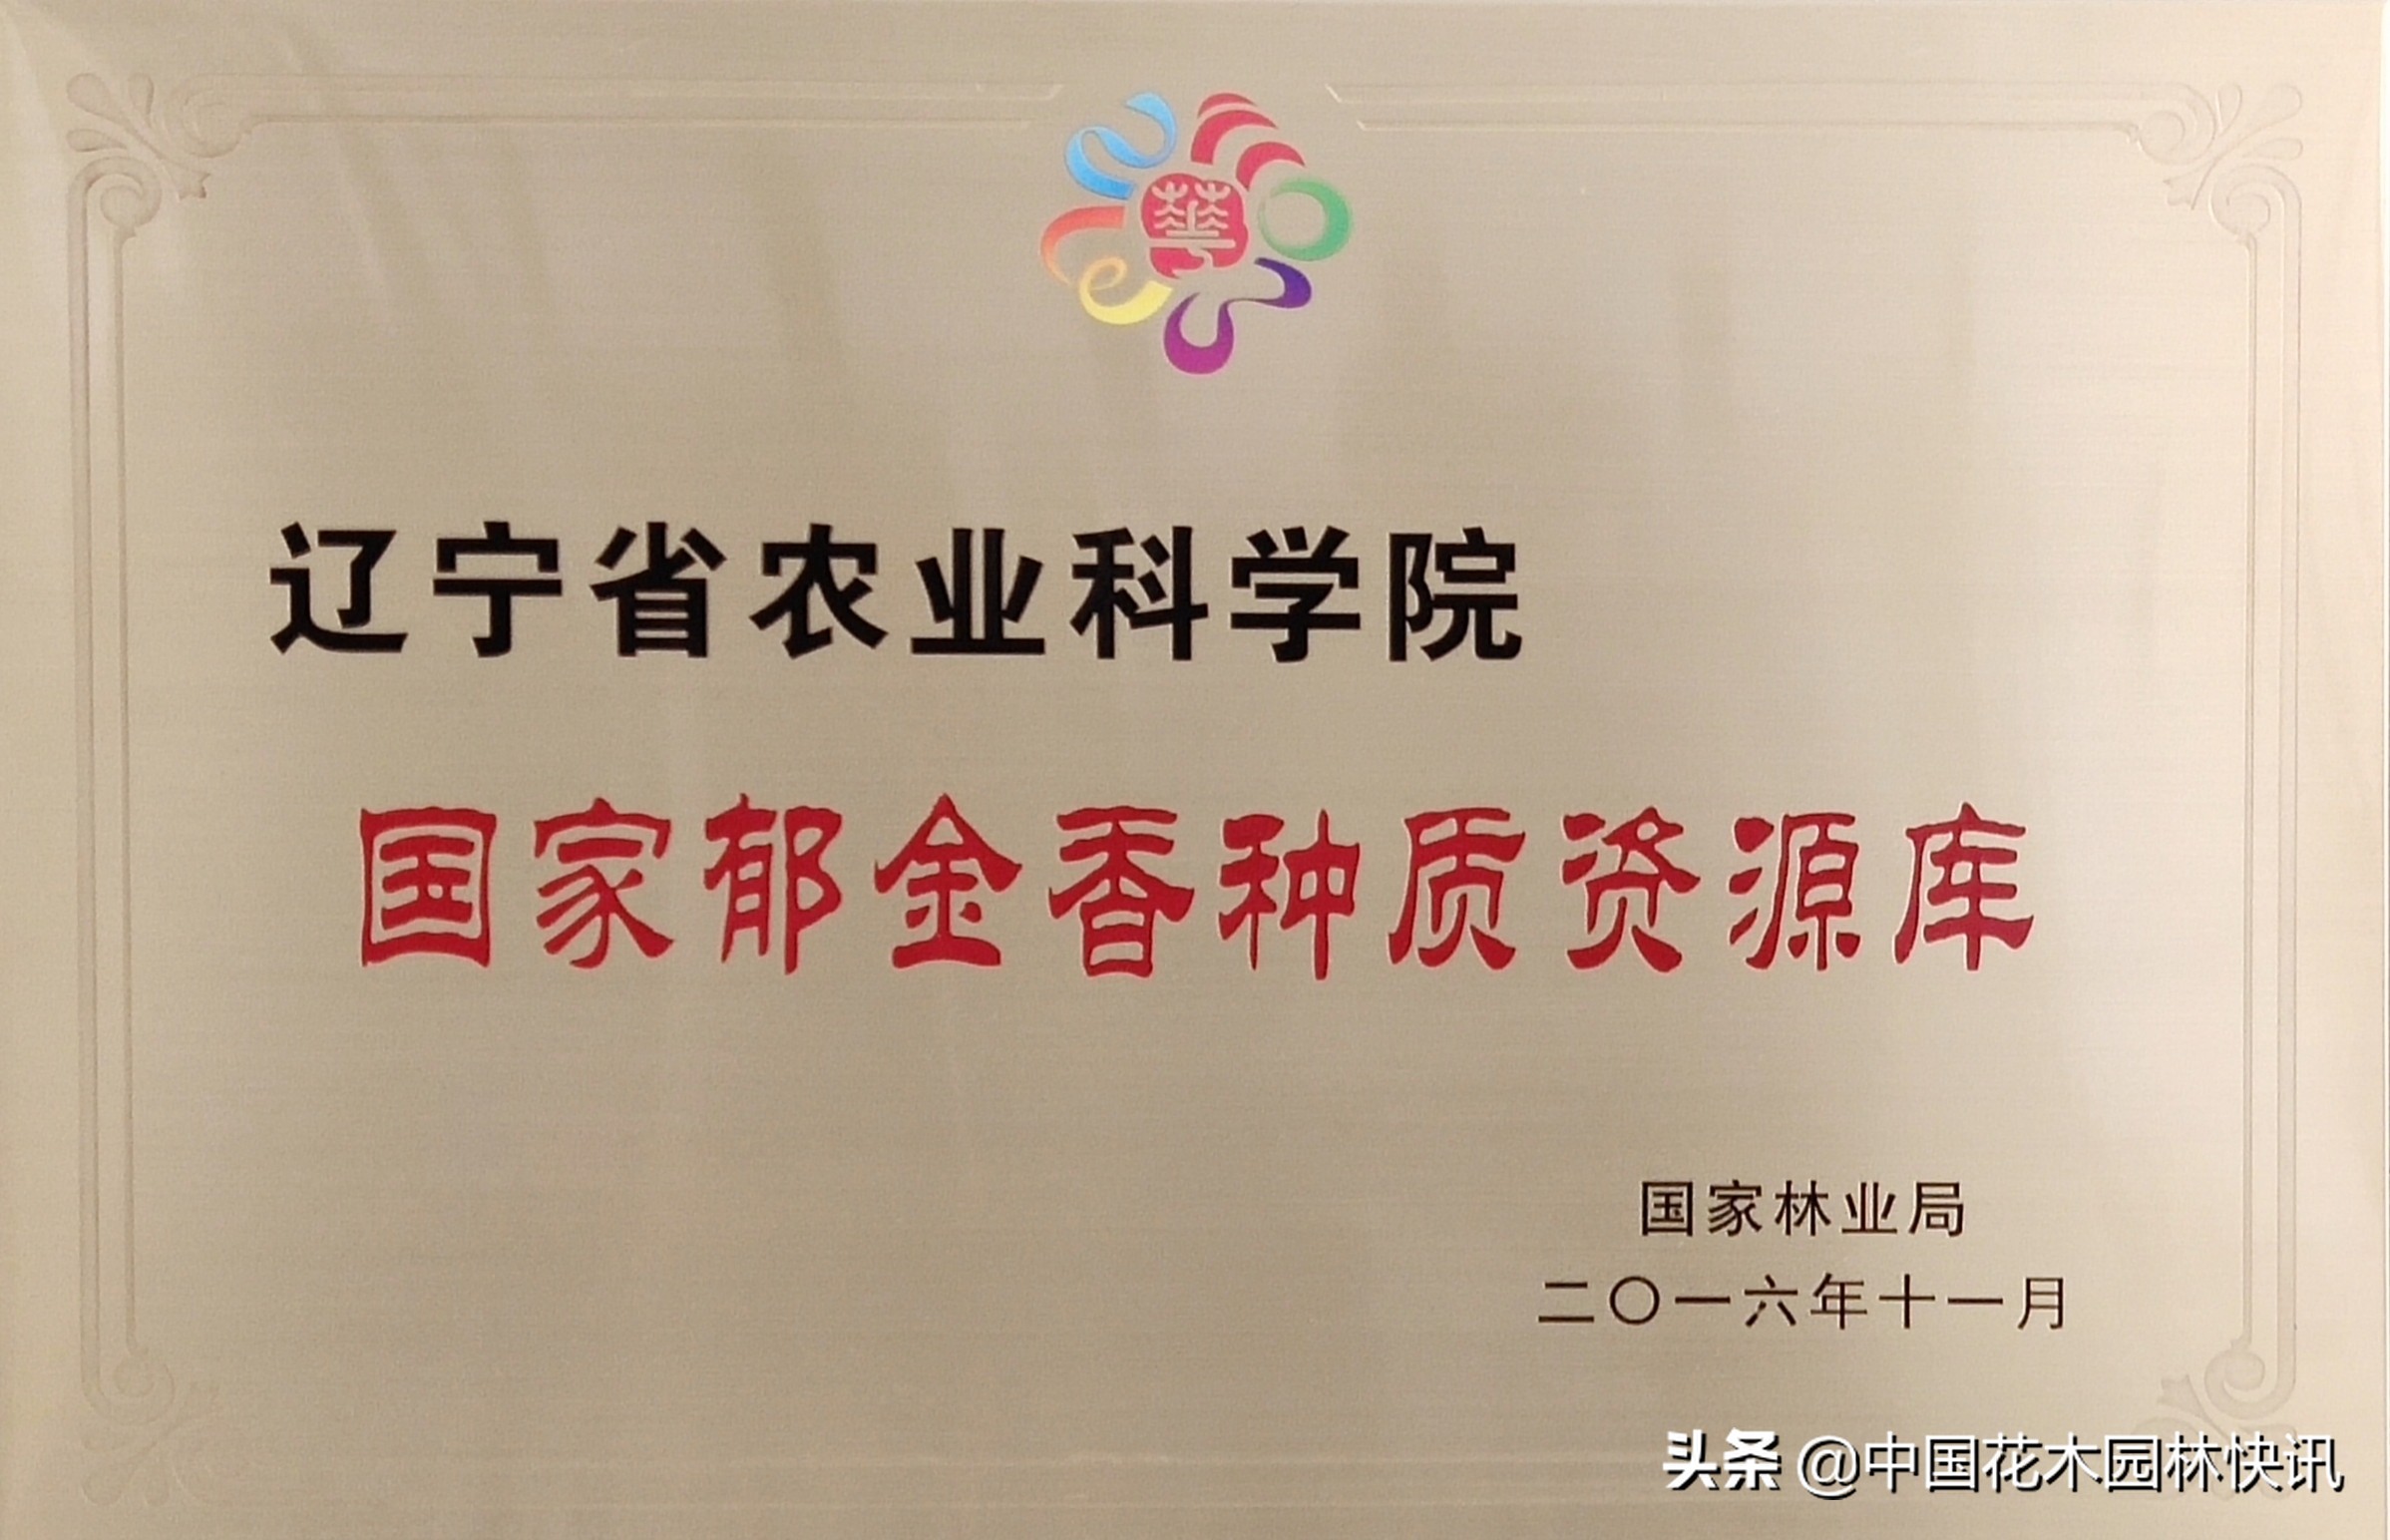 全国郁金香种质资源创新利用与产业化高峰论坛下月在辽宁召开